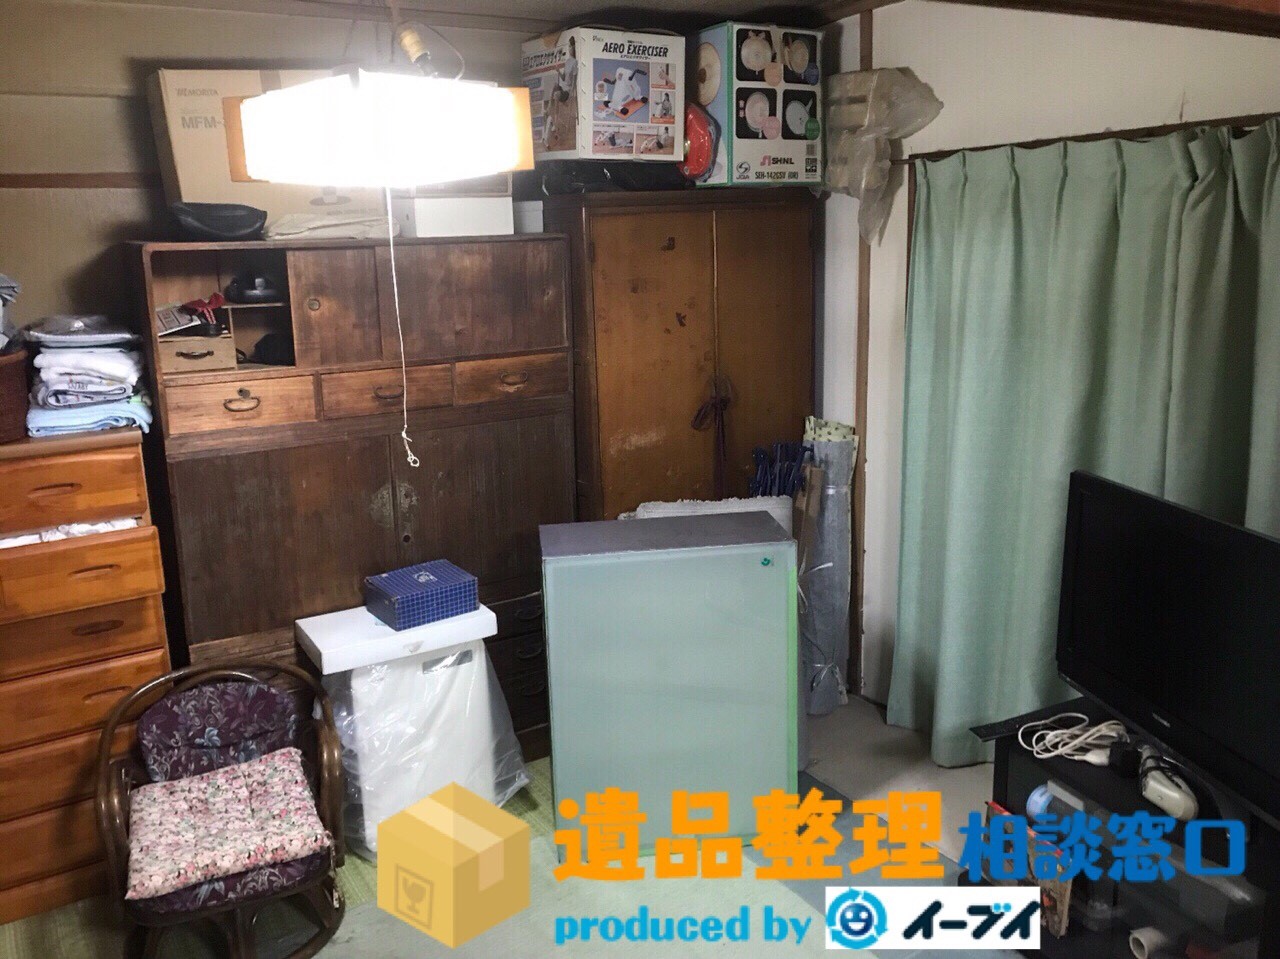 大阪府泉南市で遺品整理の作業で家財処分や片付け整理をしました。のアイキャッチ